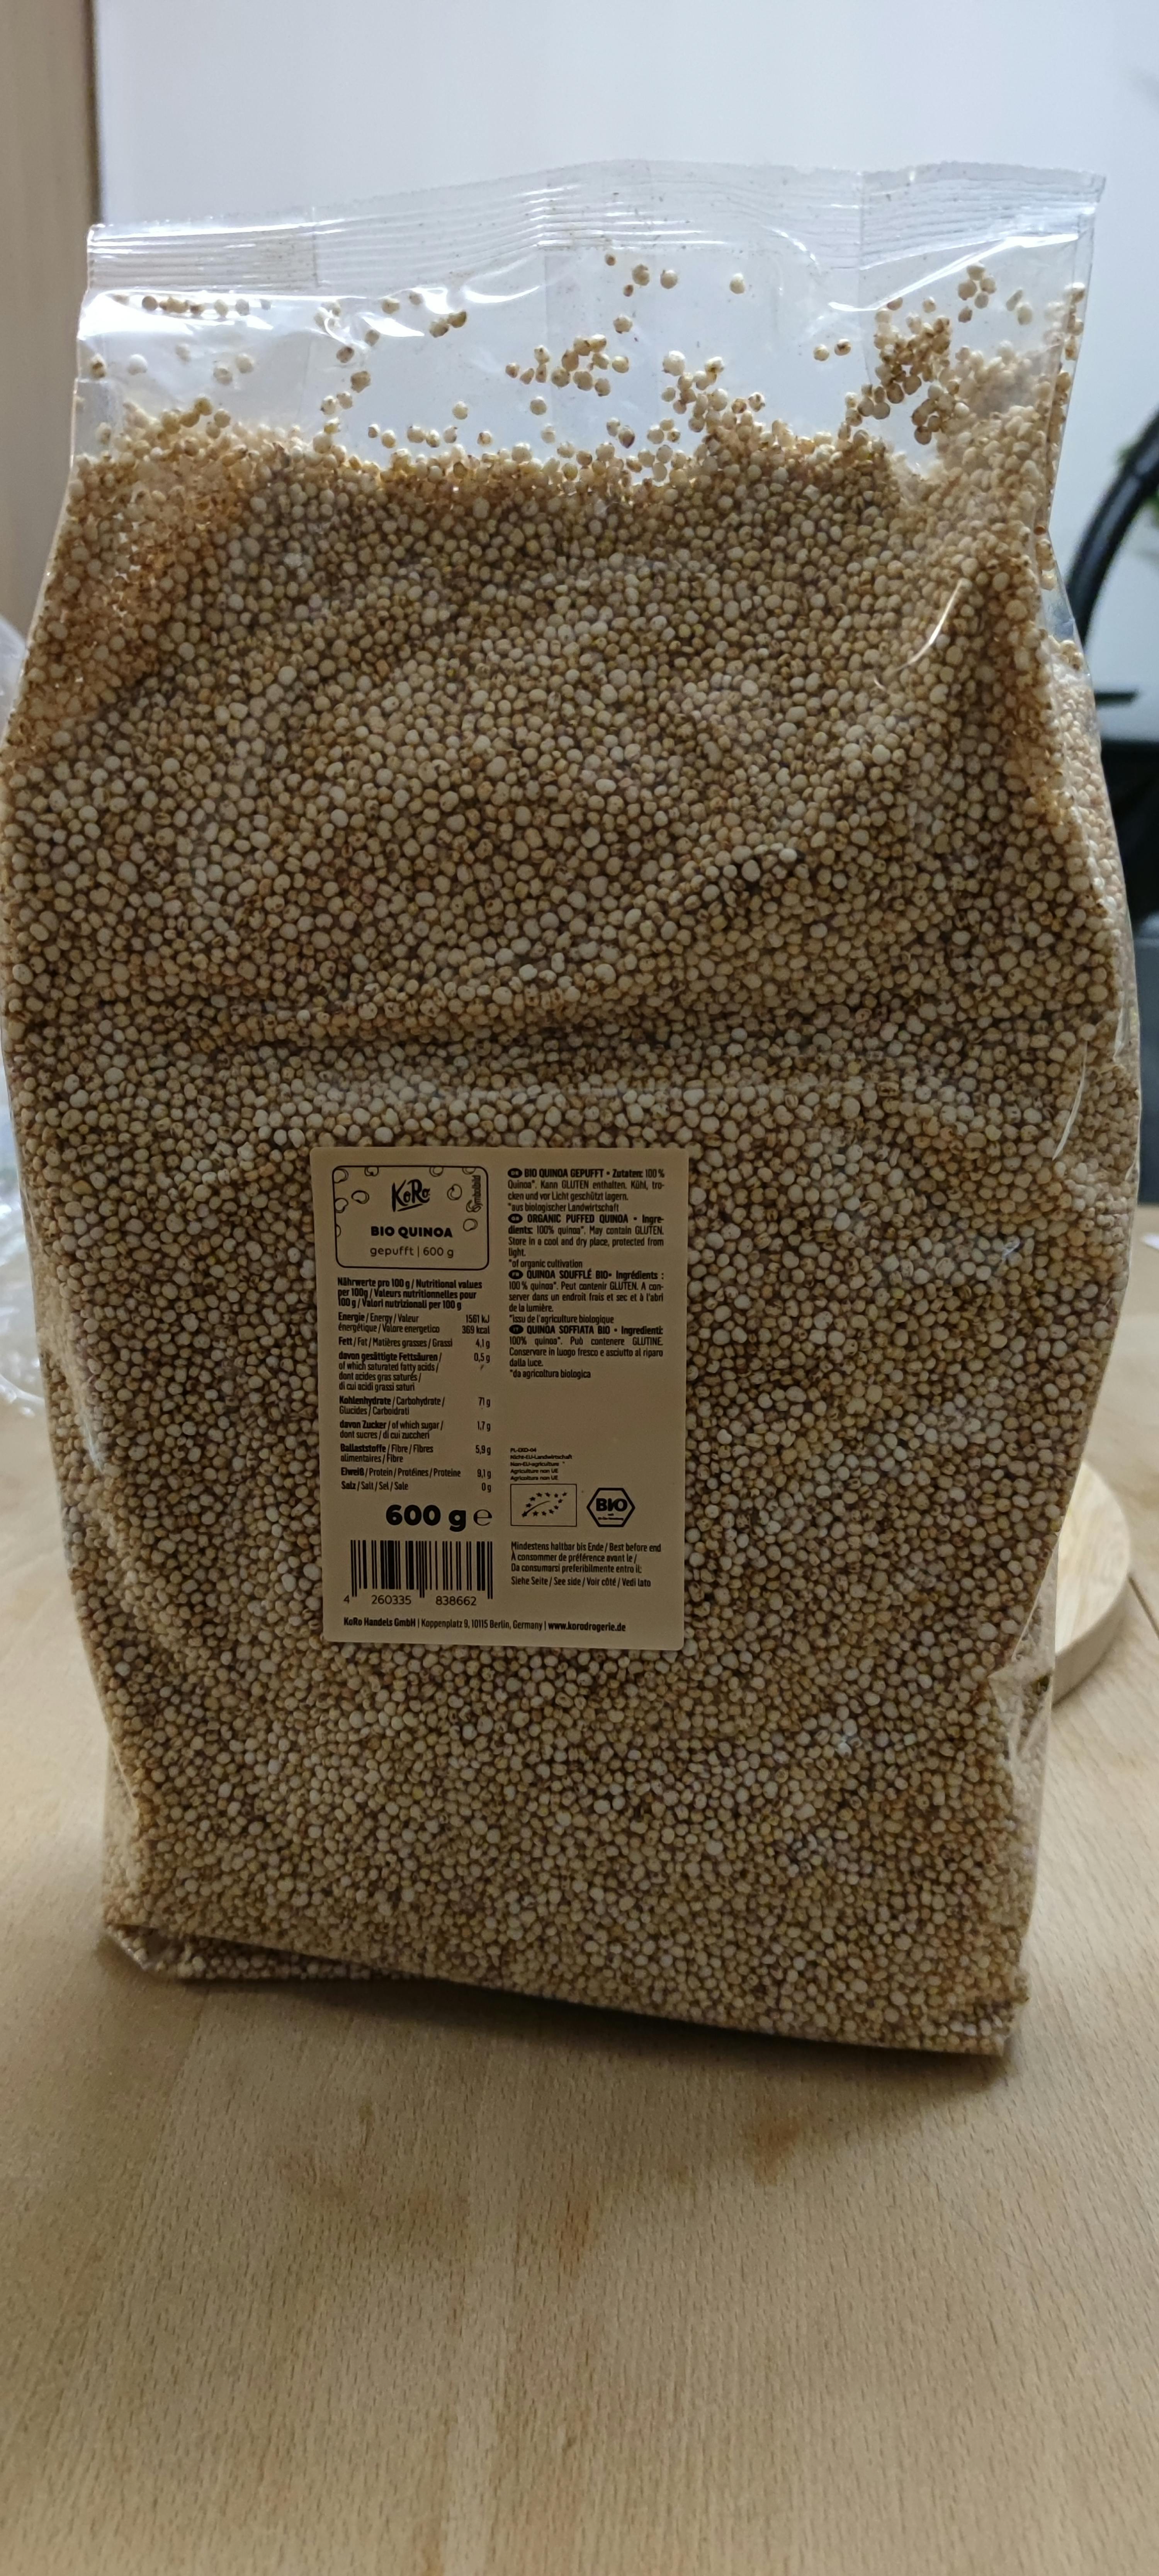 Puffed Quinoa Bio 250 g Ecosana - Drasanvi English